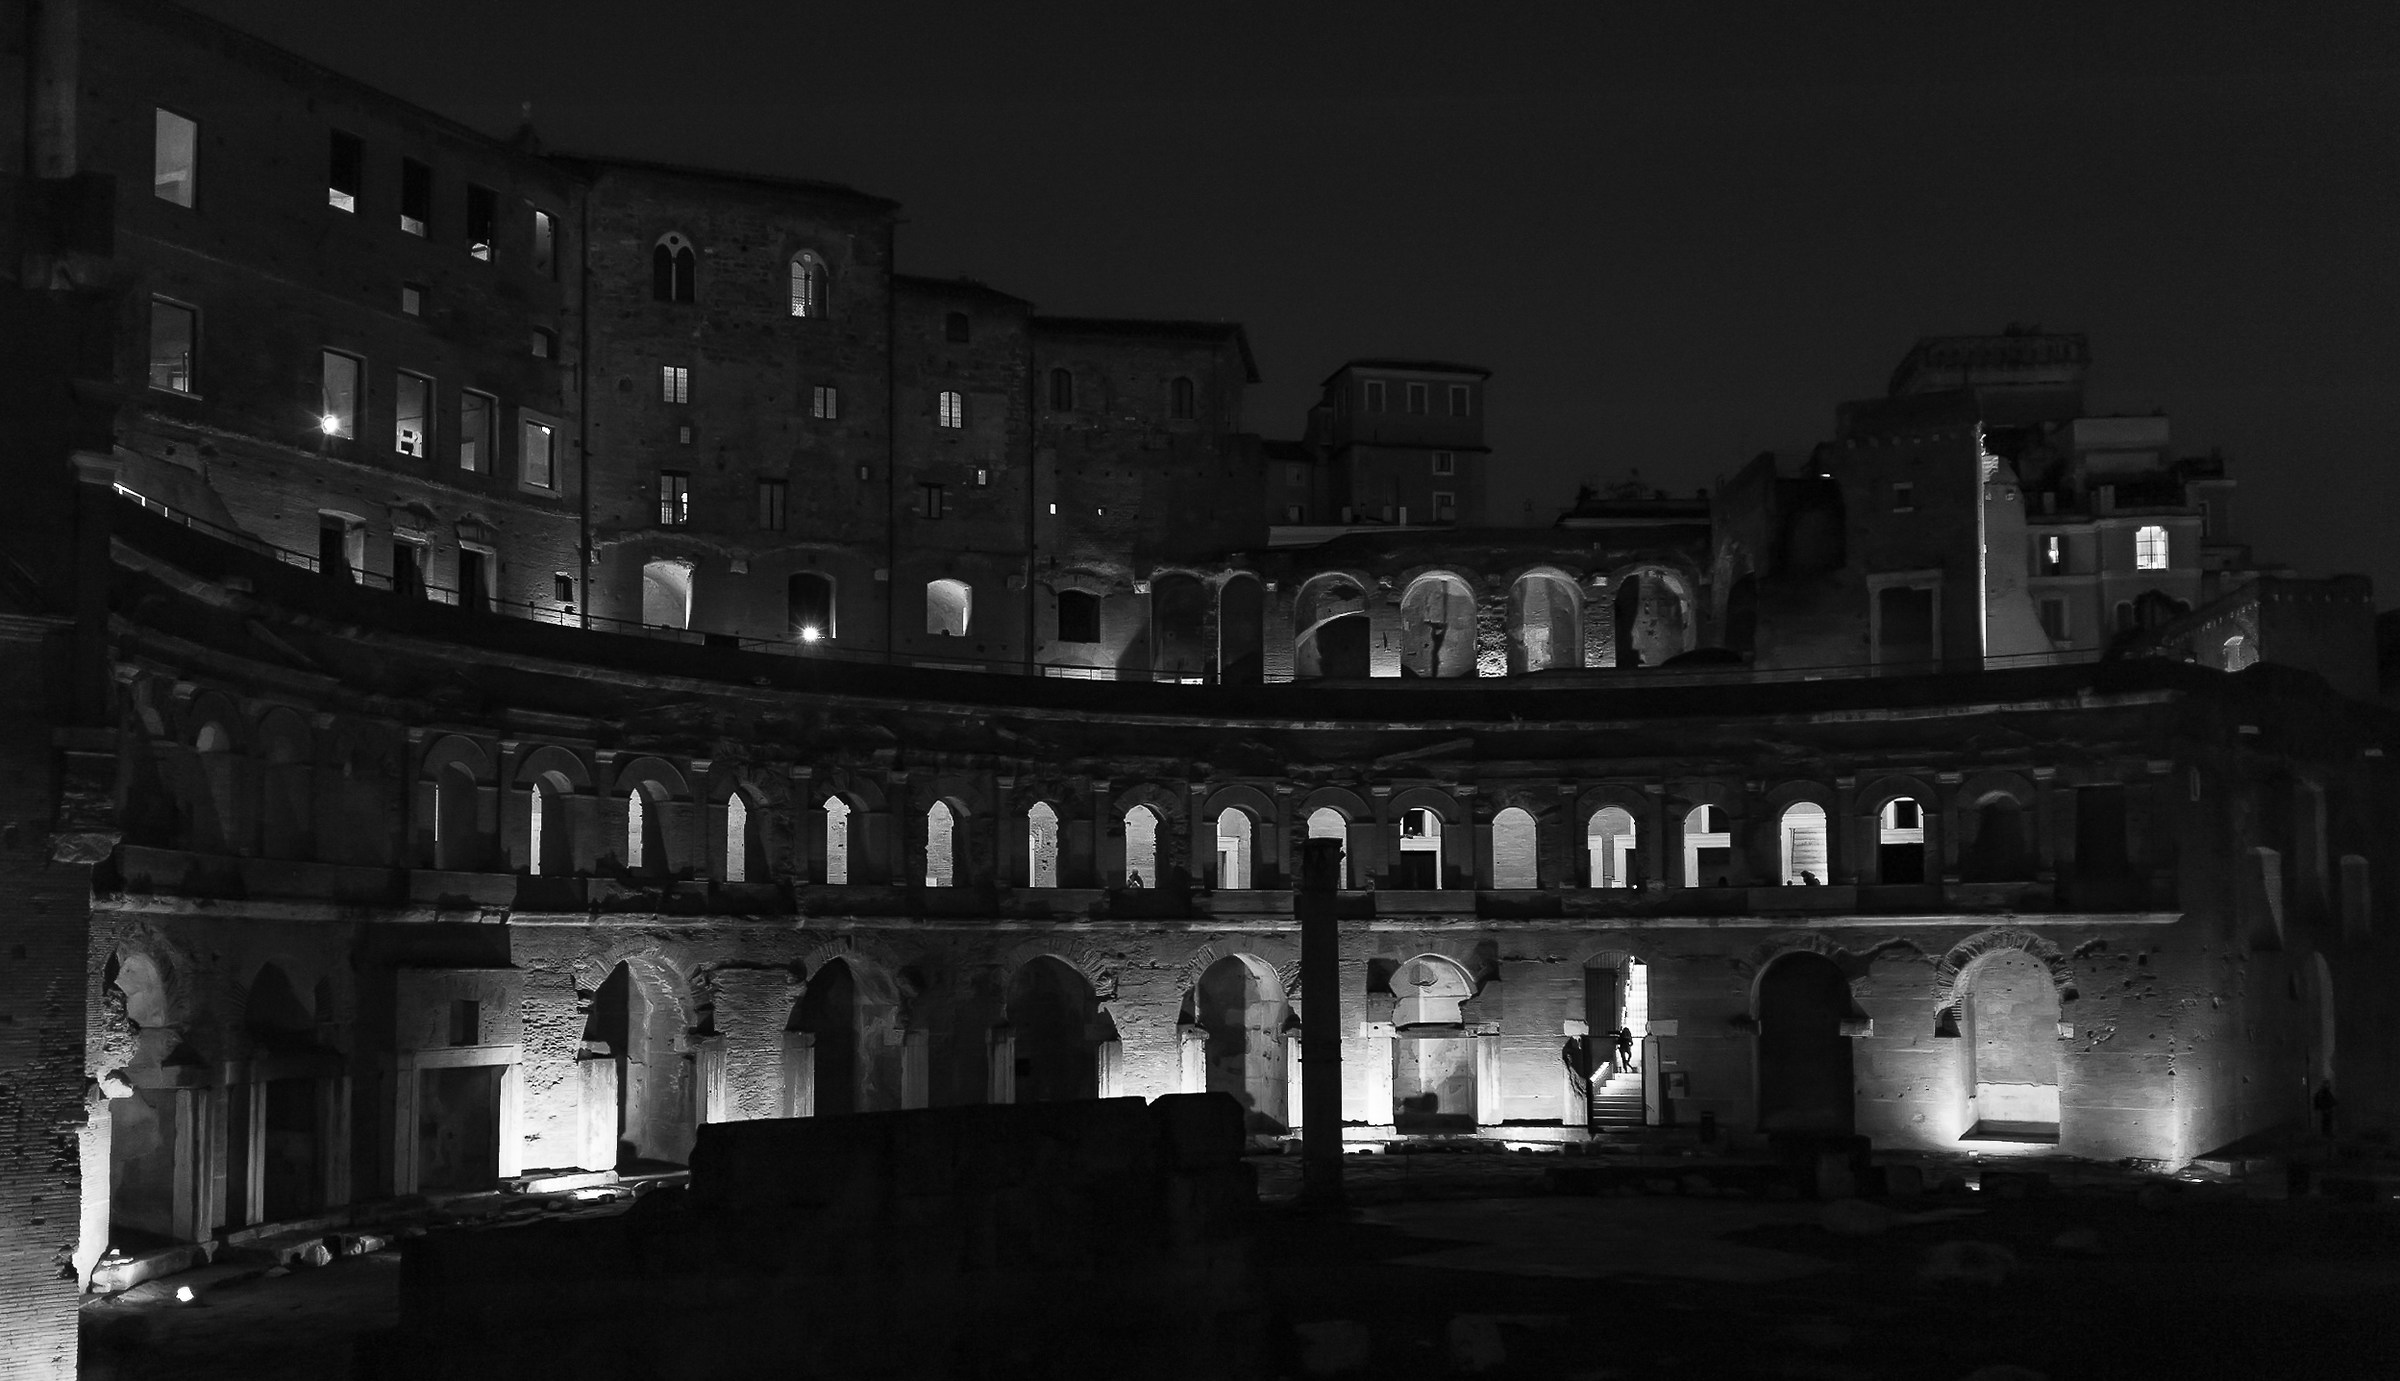 Mercati di Traiano at night ......